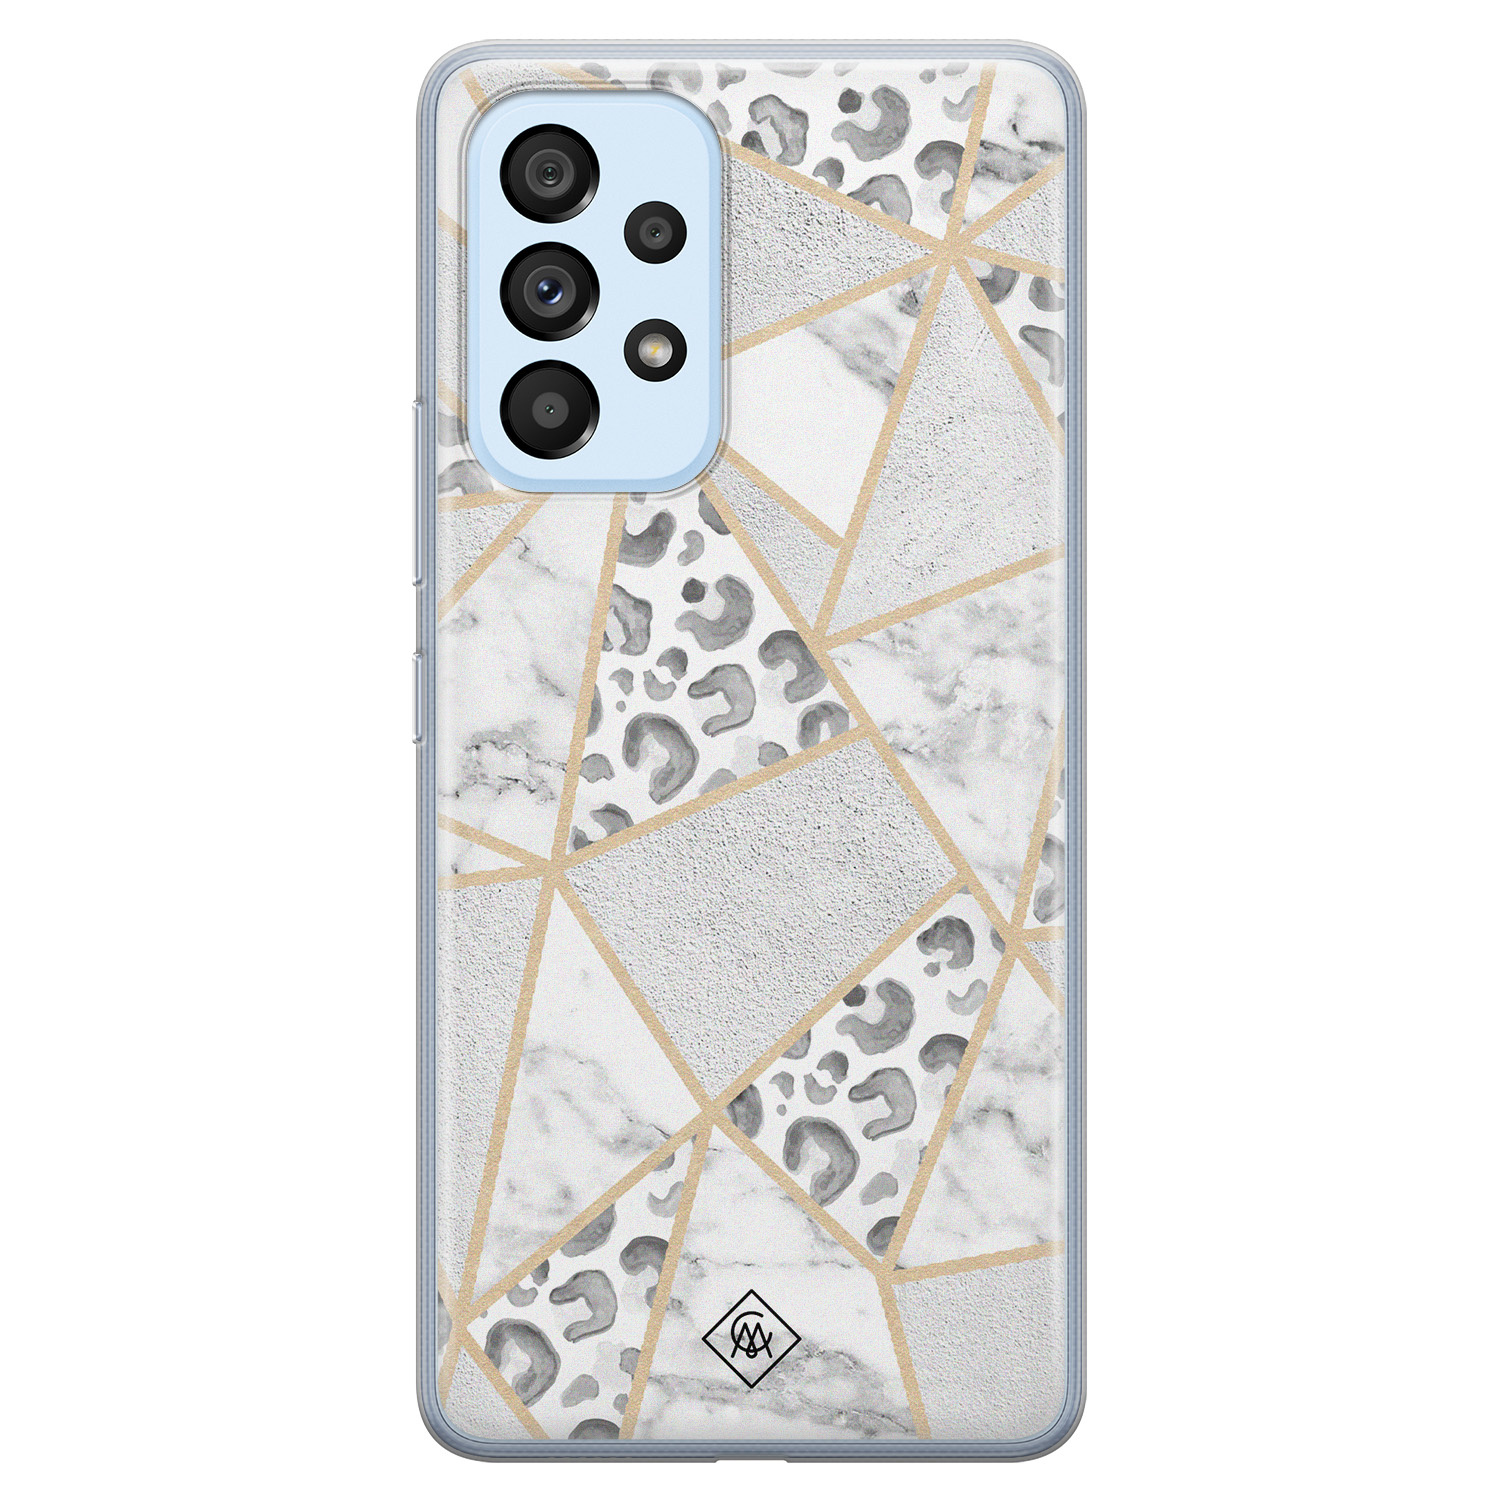 Samsung Galaxy A33 siliconen hoesje - Stone & leopard print